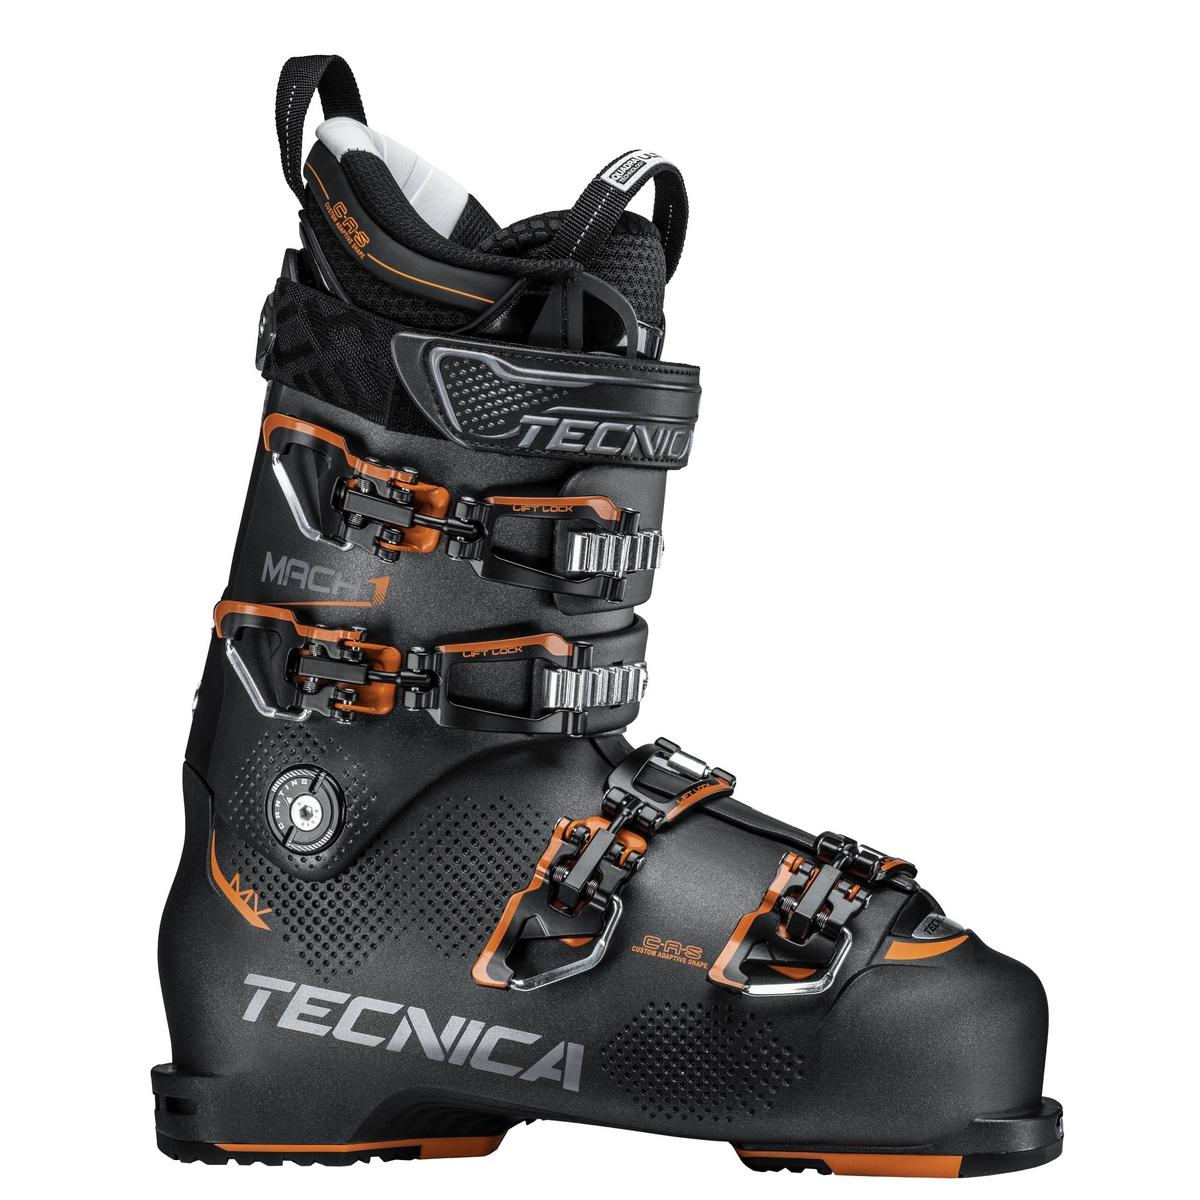 Tecnica Men's Mach1 MV 110 Ski Boot 2018 - Black